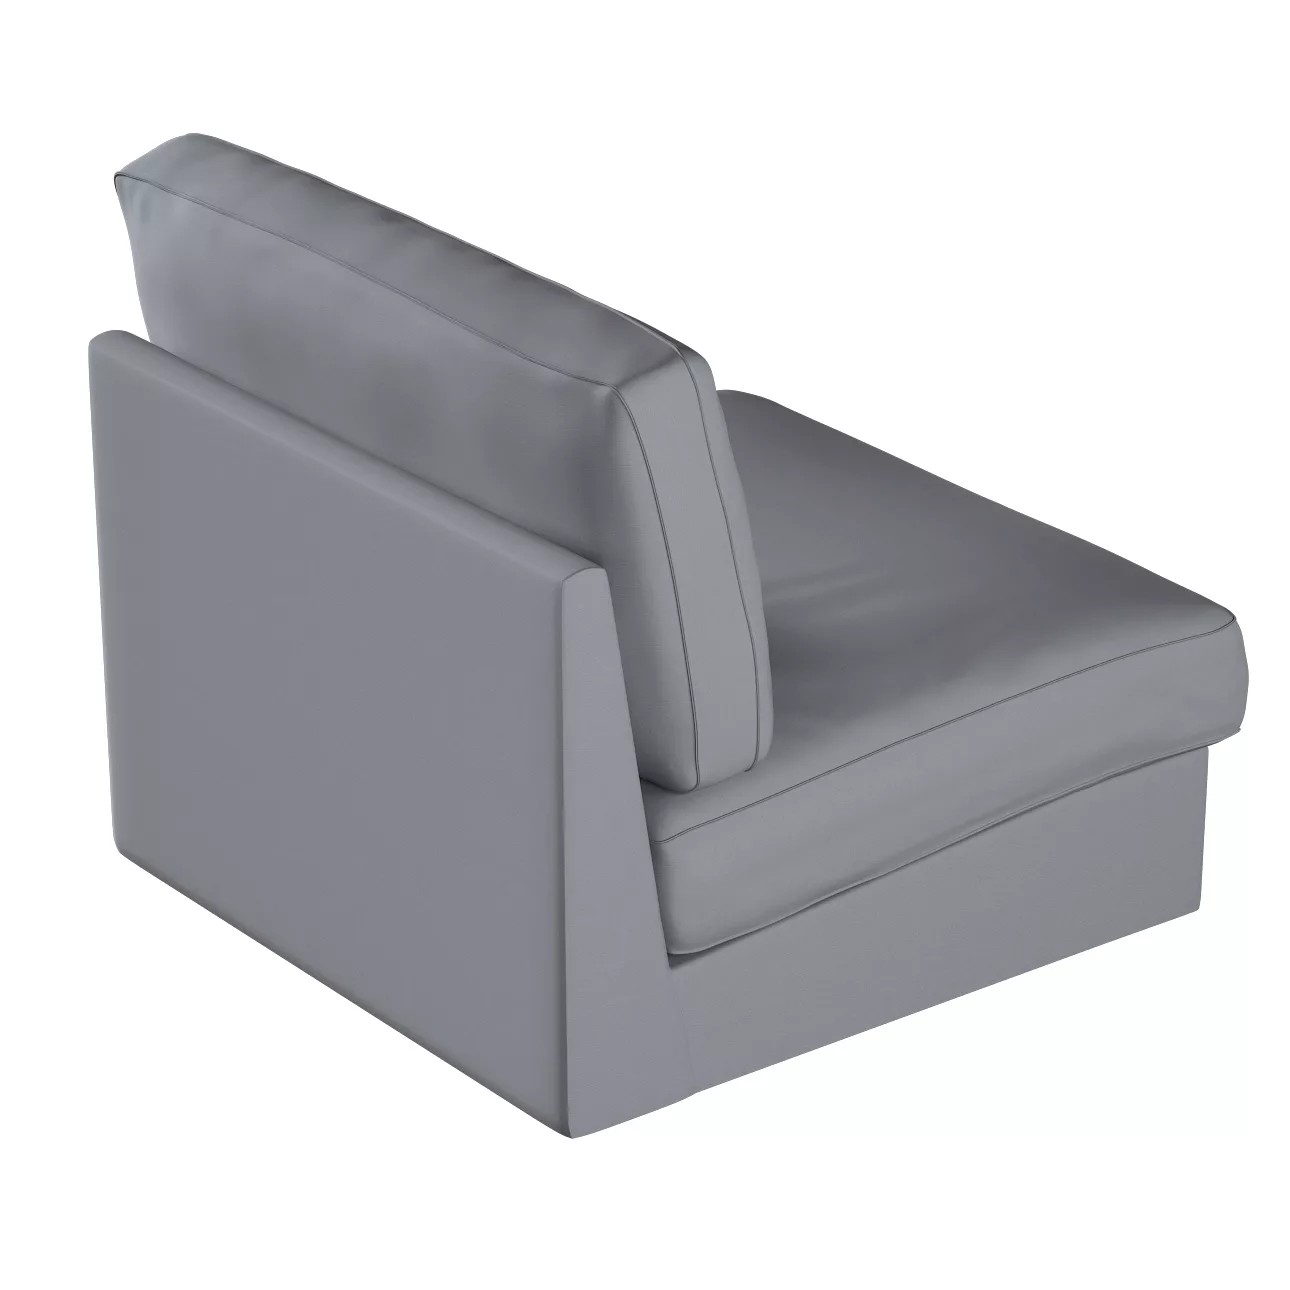 Bezug für Kivik Sessel nicht ausklappbar, grau, Bezug für Sessel Kivik, Cot günstig online kaufen